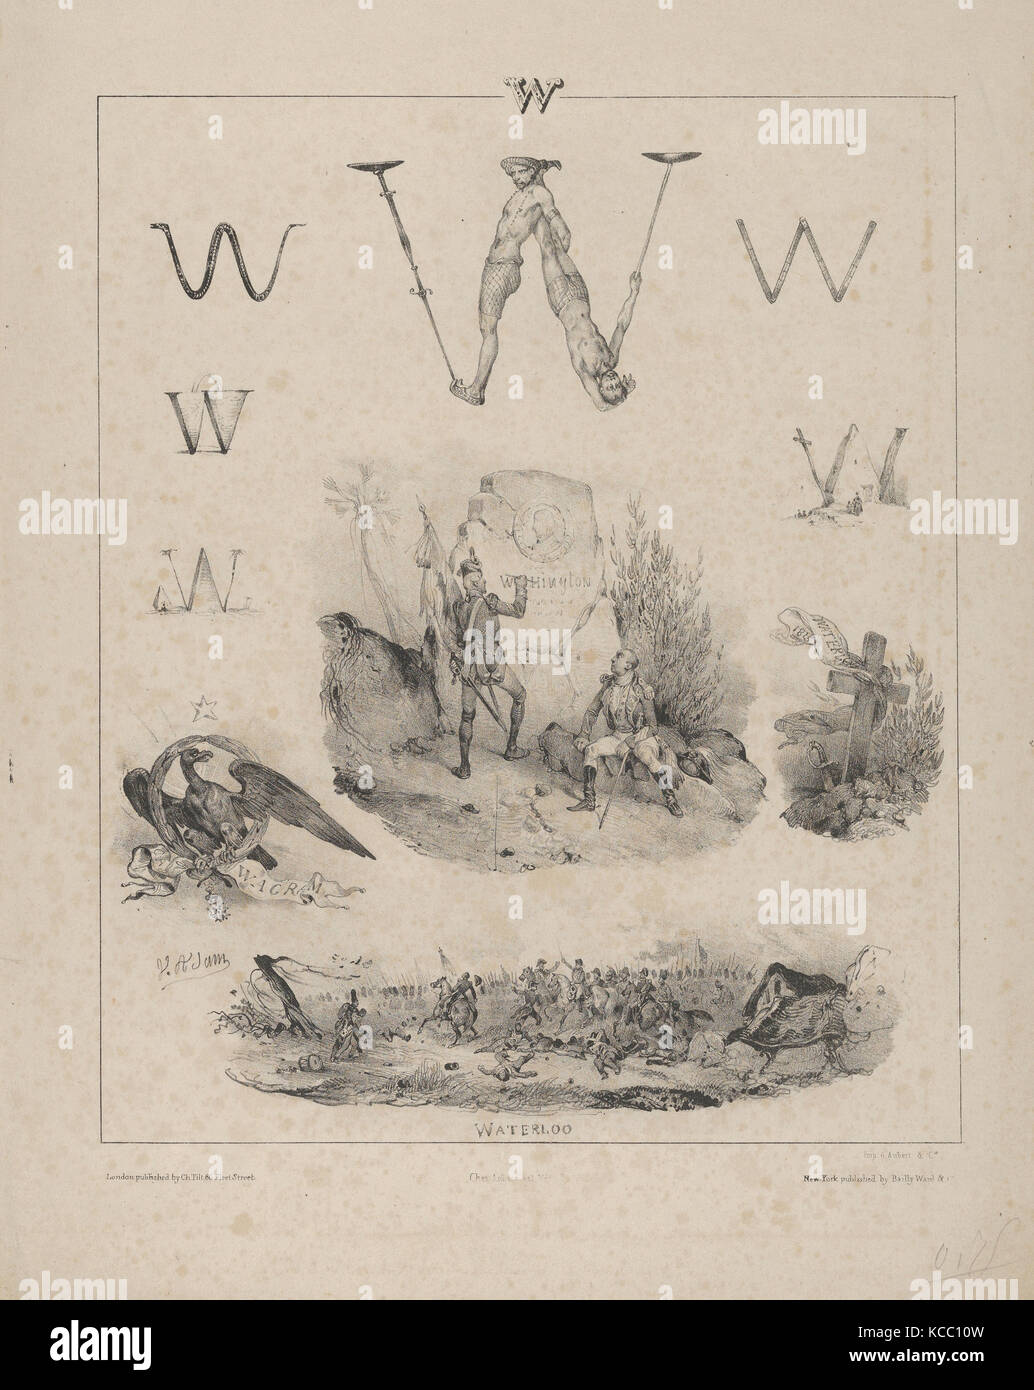 La letra "W": Washington, Wagram, Waterloo, Víctor Adán, 1833 Foto de stock